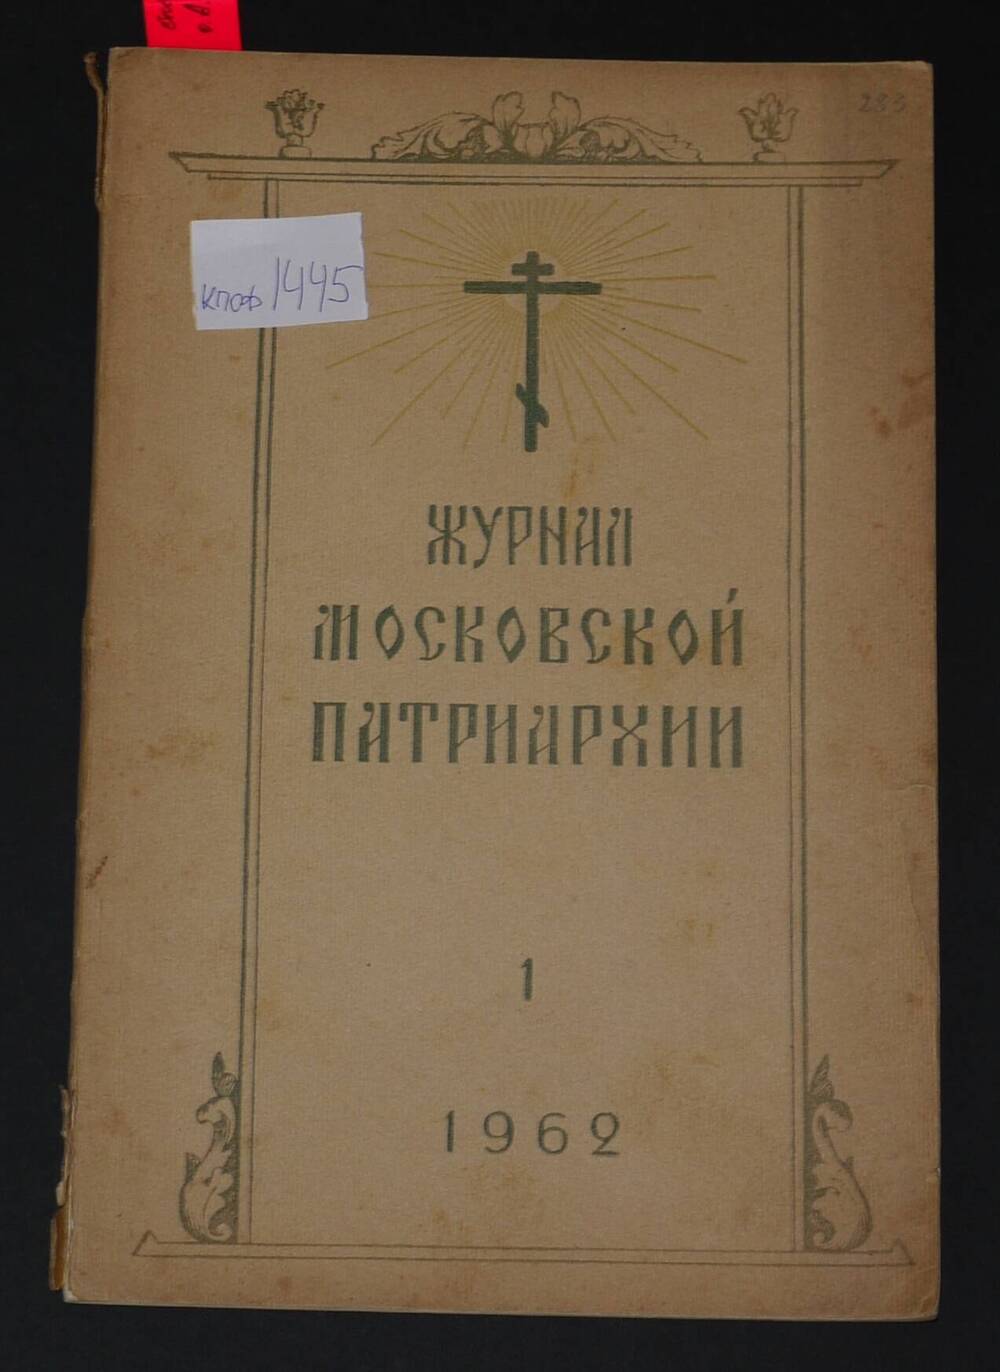 Журнал Московской Патриархии.
1962г. №1